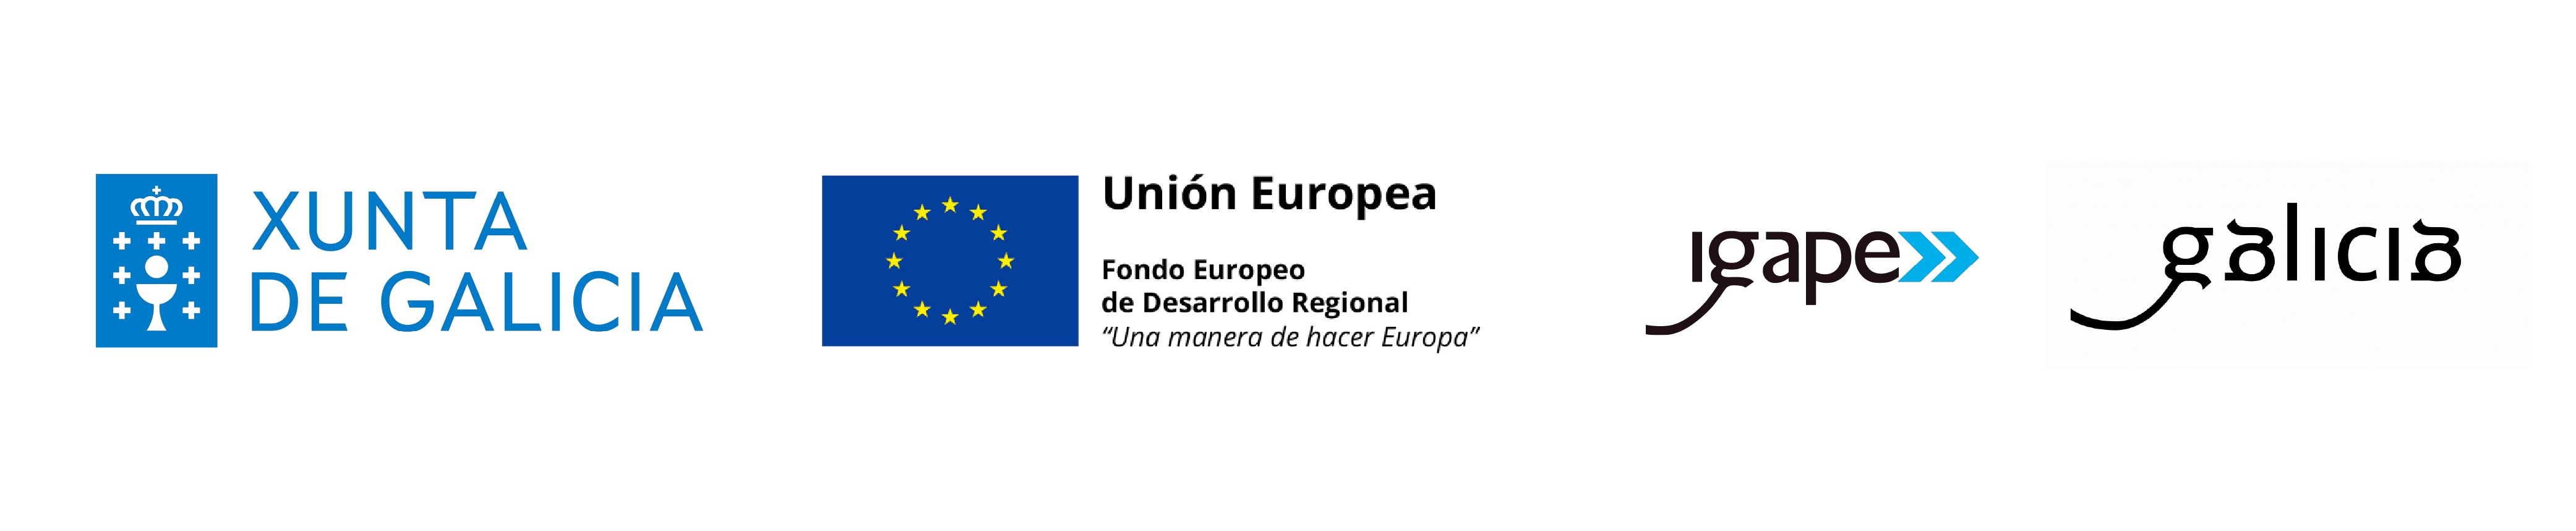 Xunta Unión Europea Igape Galicia